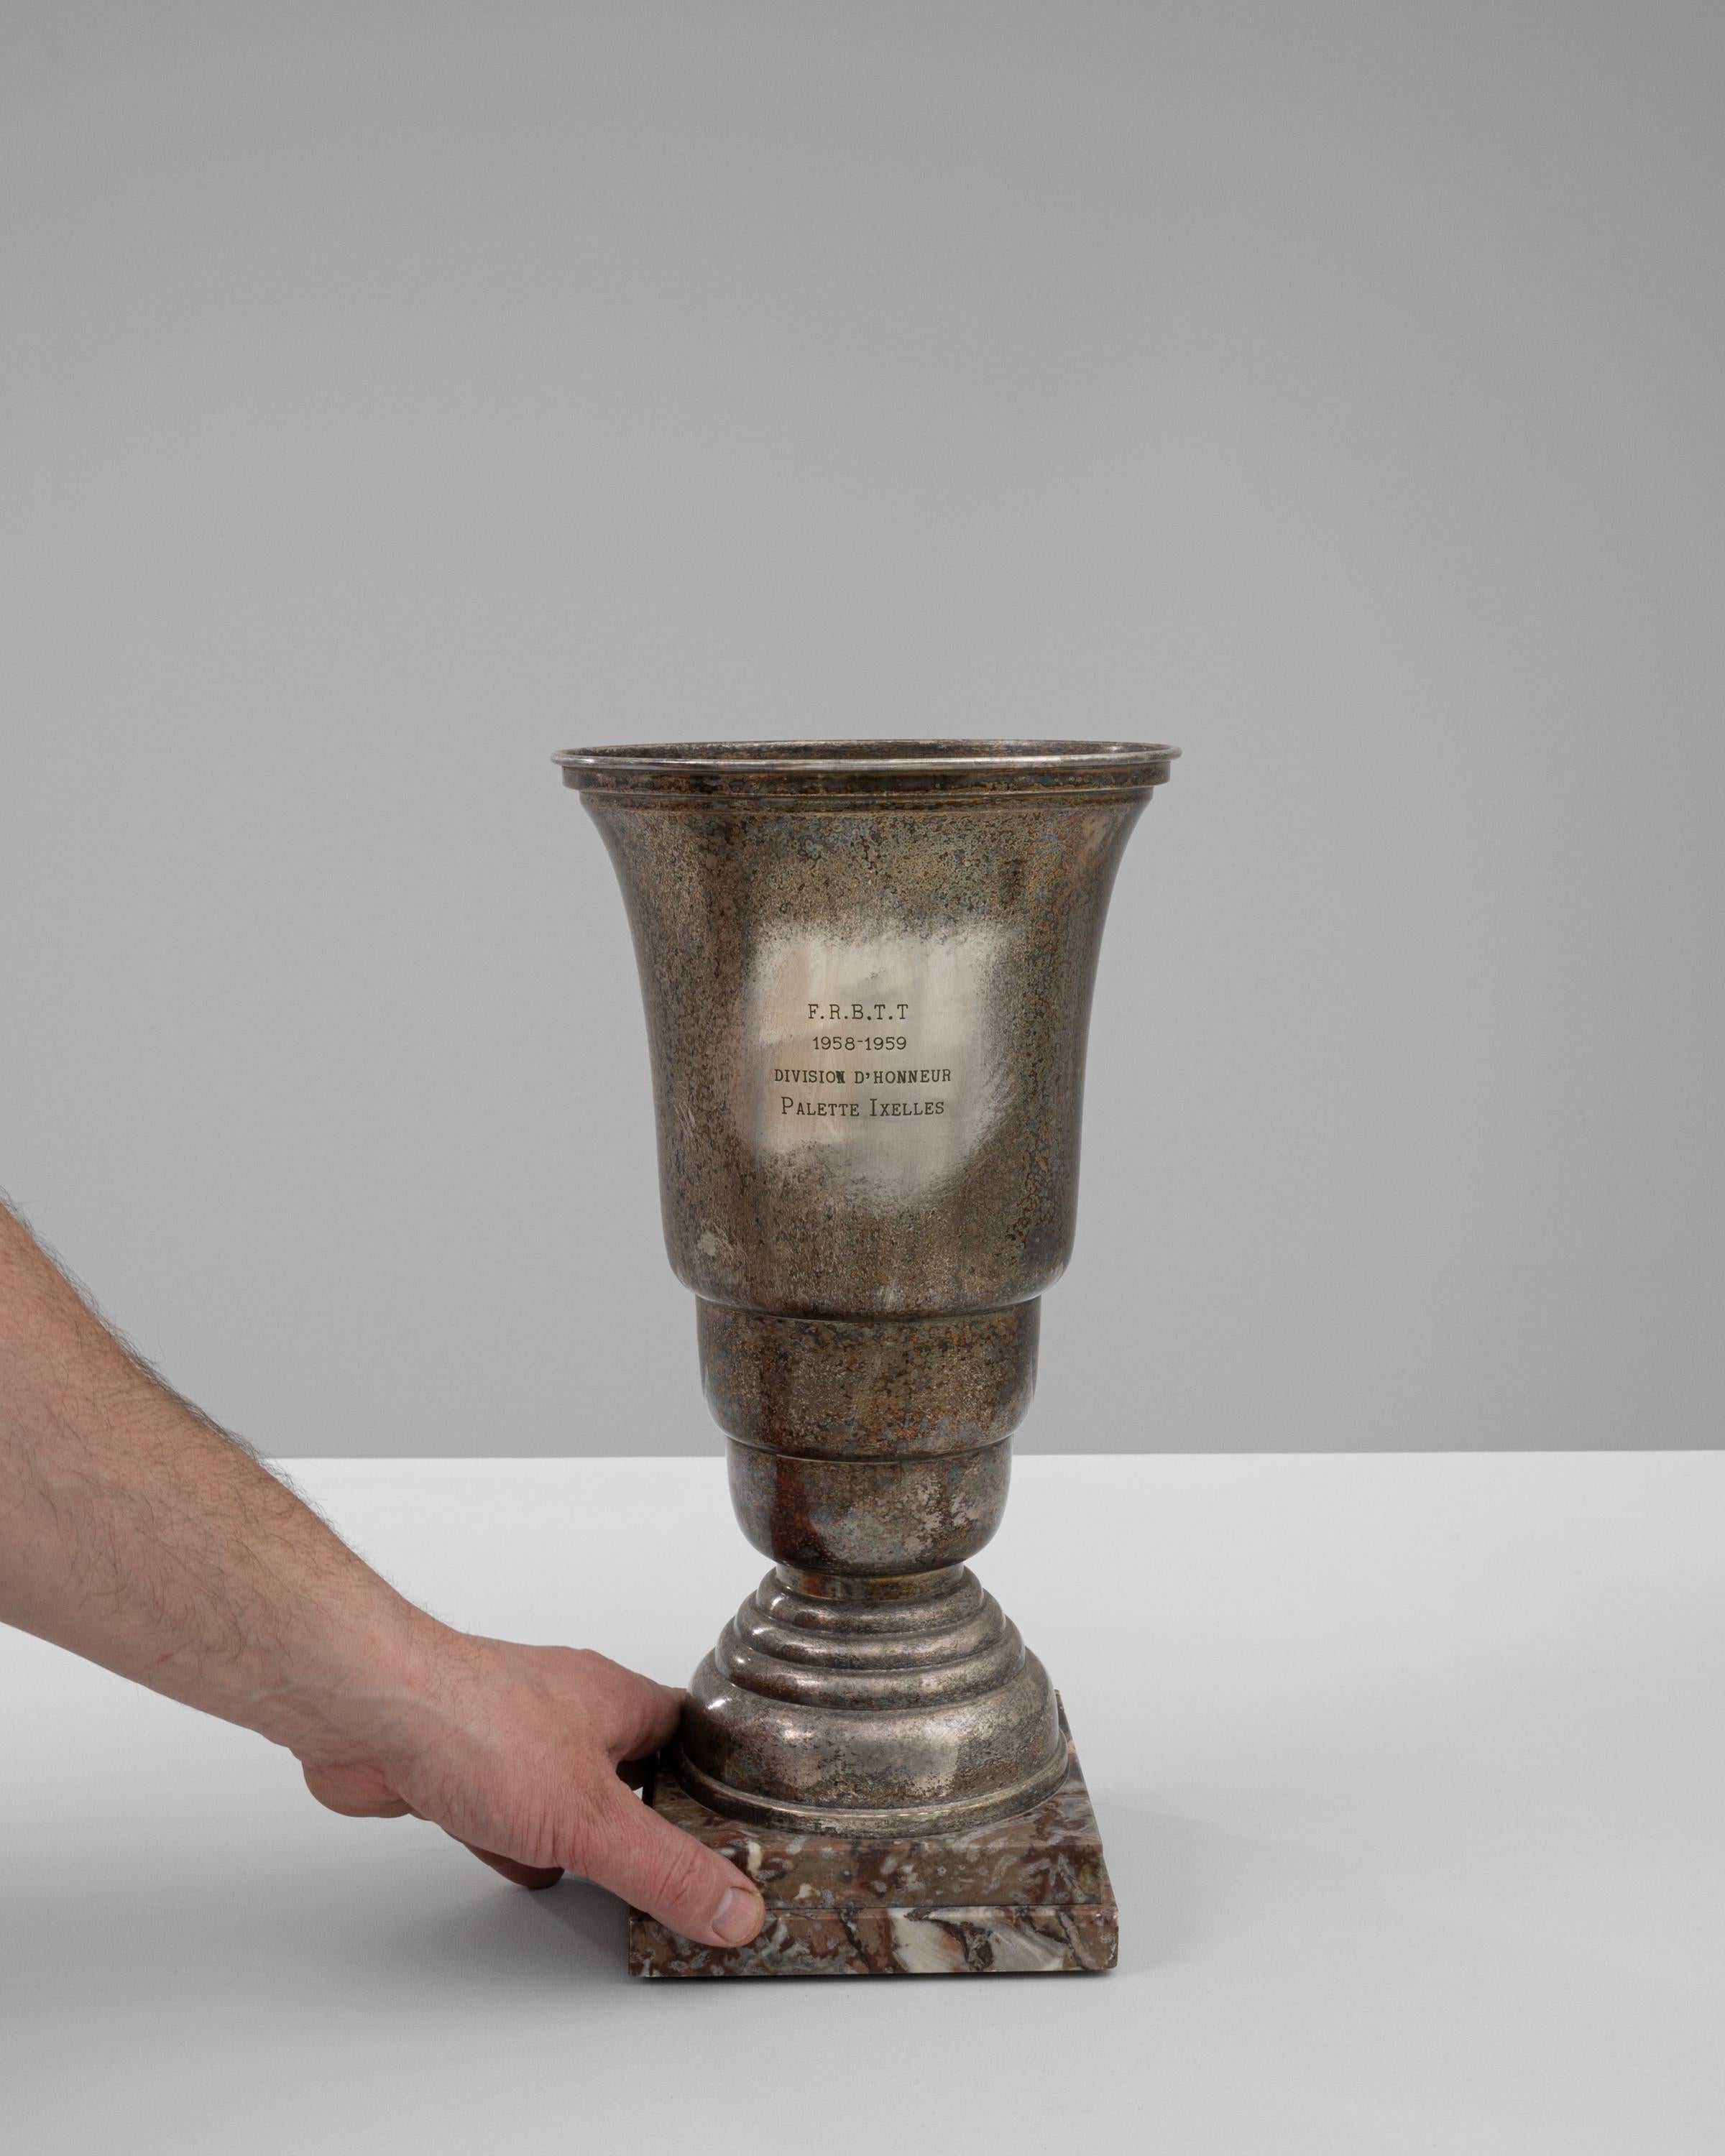 Diese belgische Pokaltrophäe aus dem 20. Jahrhundert, die vom Geist des Wettbewerbs durchdrungen ist, ist ein großartiger Fund für Sammler und Sportbegeisterte gleichermaßen. Die Trophäe, die aus einer Mischung aus haltbarem Metall und reichem